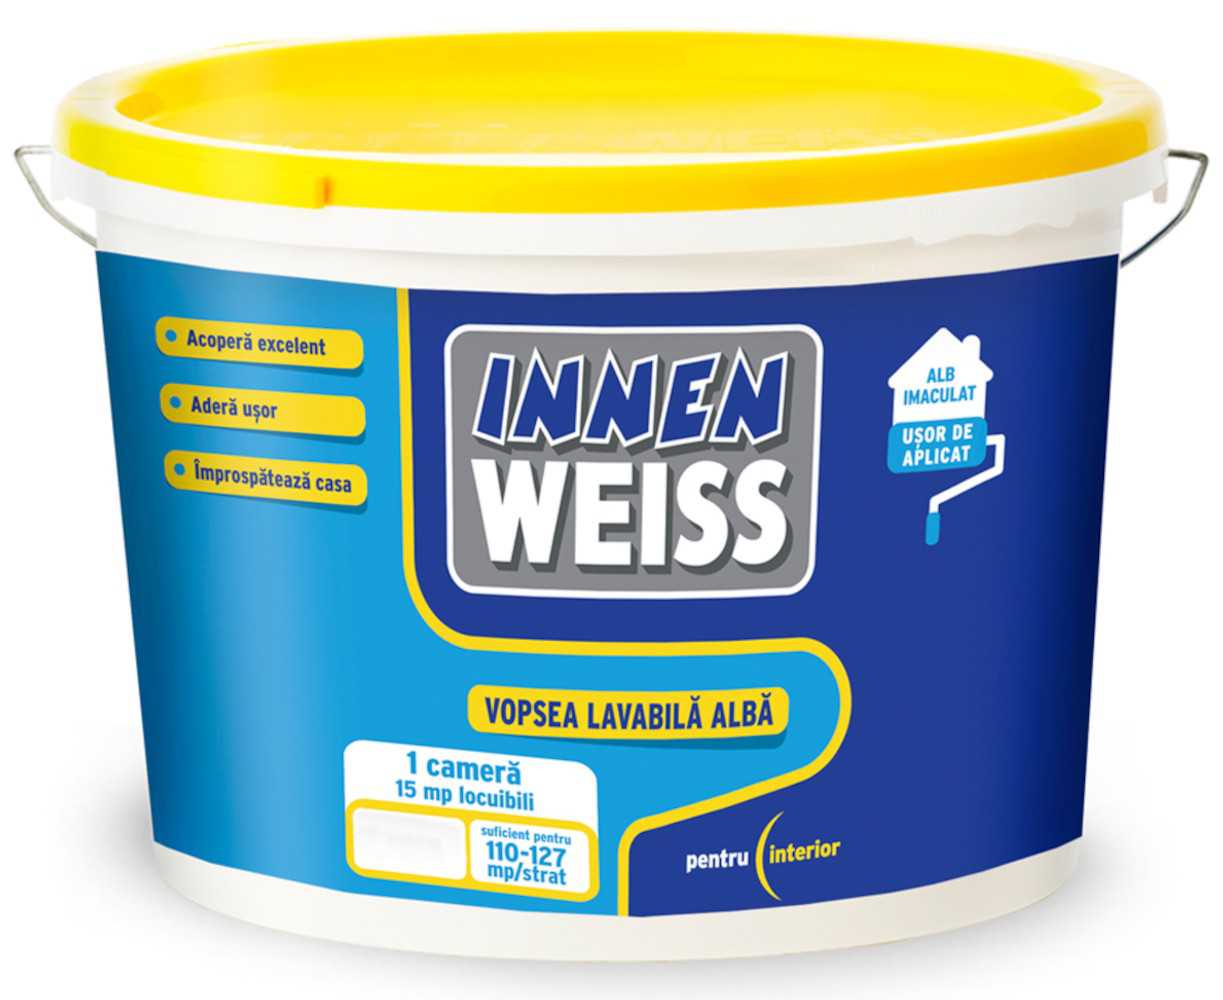 Vopsea lavabila alba interior, Innenweiss, 15 L